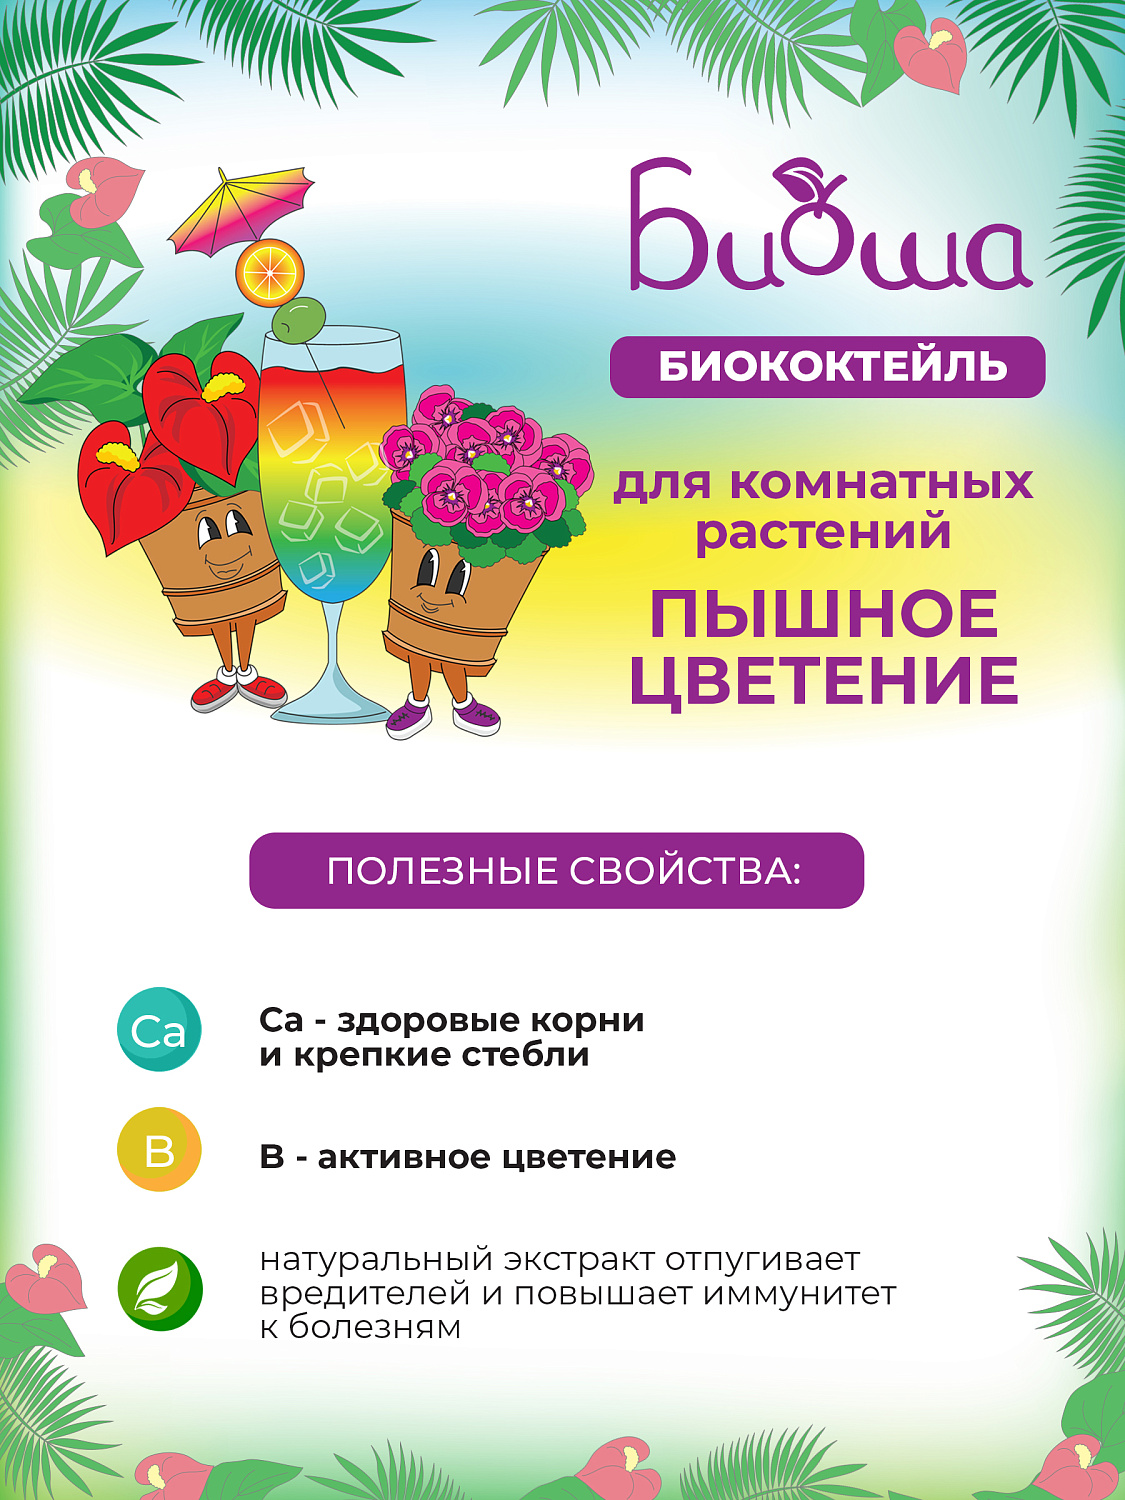 БИОкоктейль Пышное цветение для комнатных растений ТМ БИОША